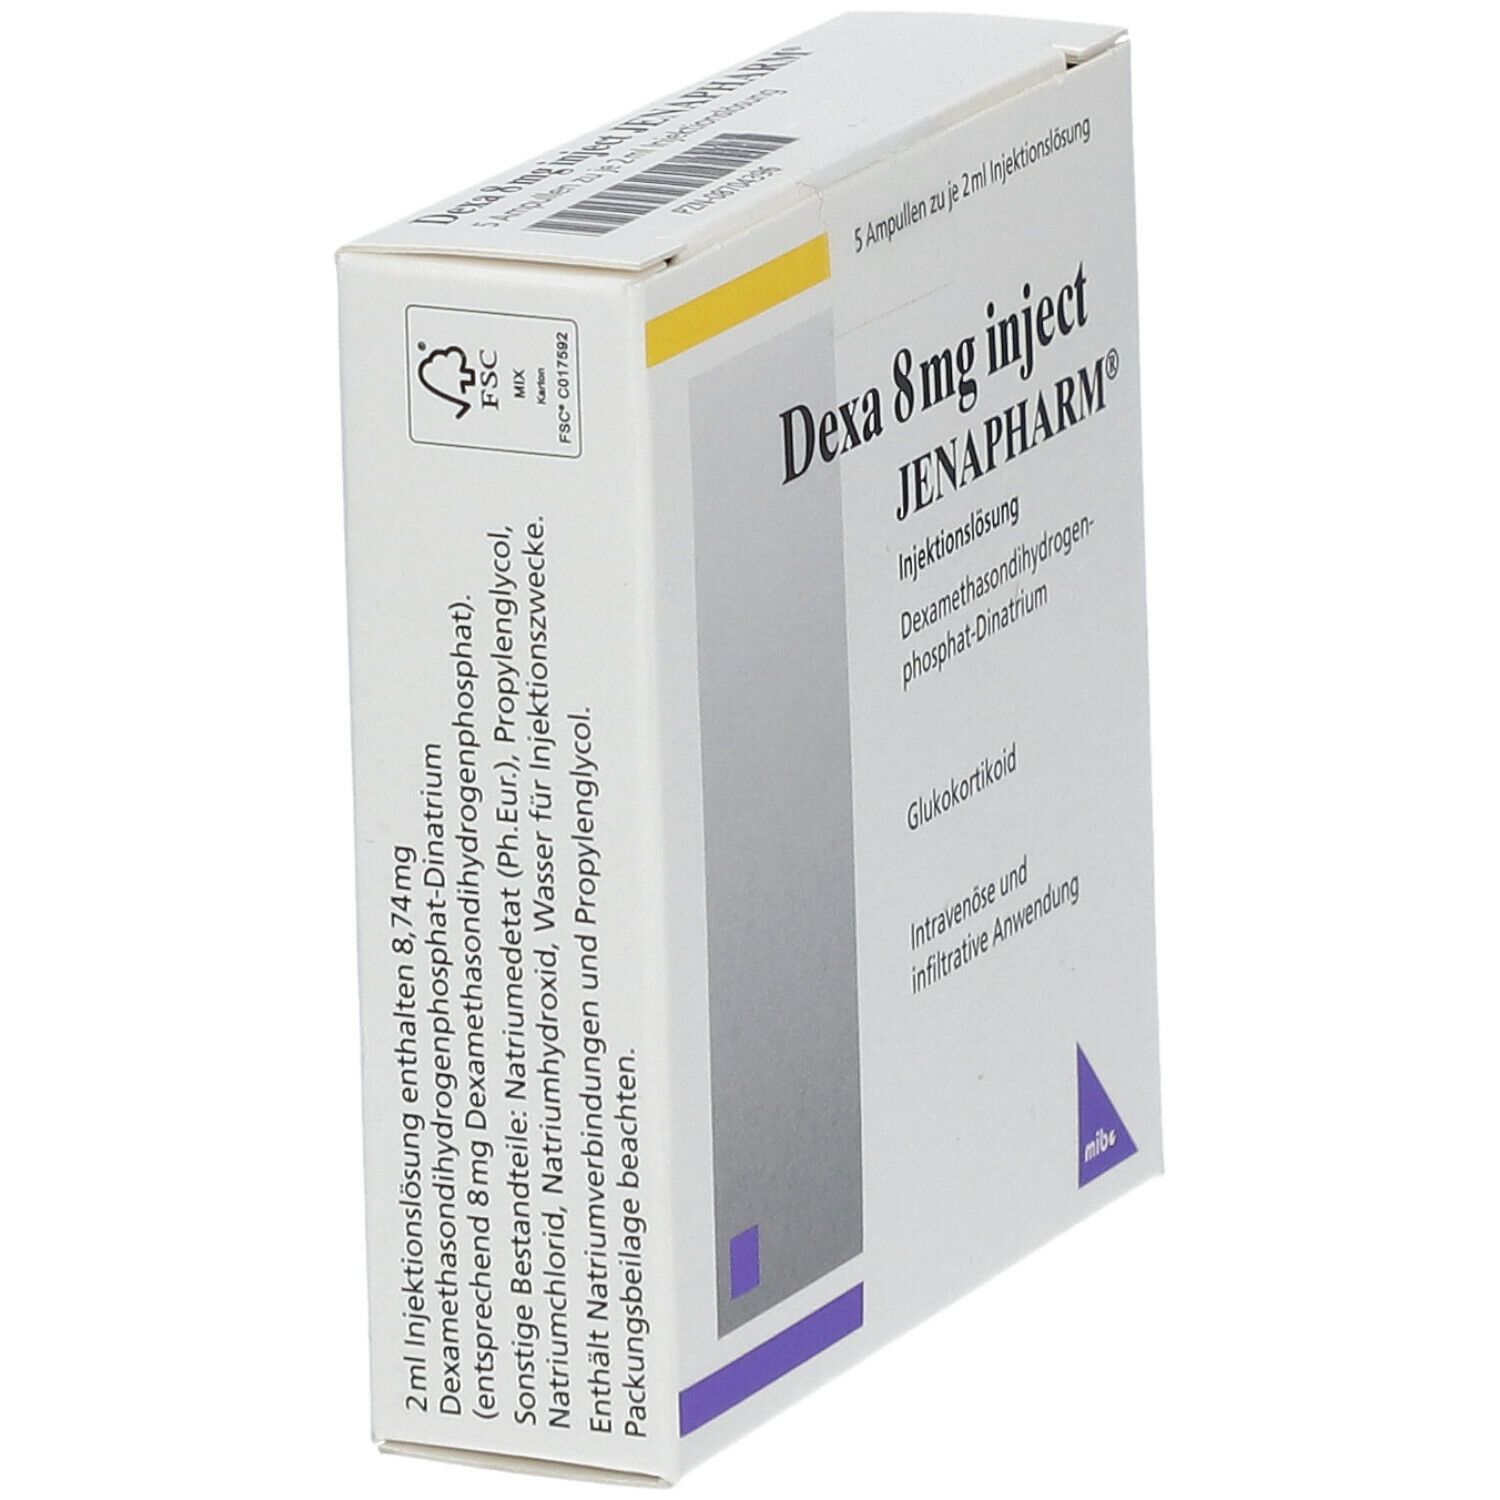 Dexa 8 mg